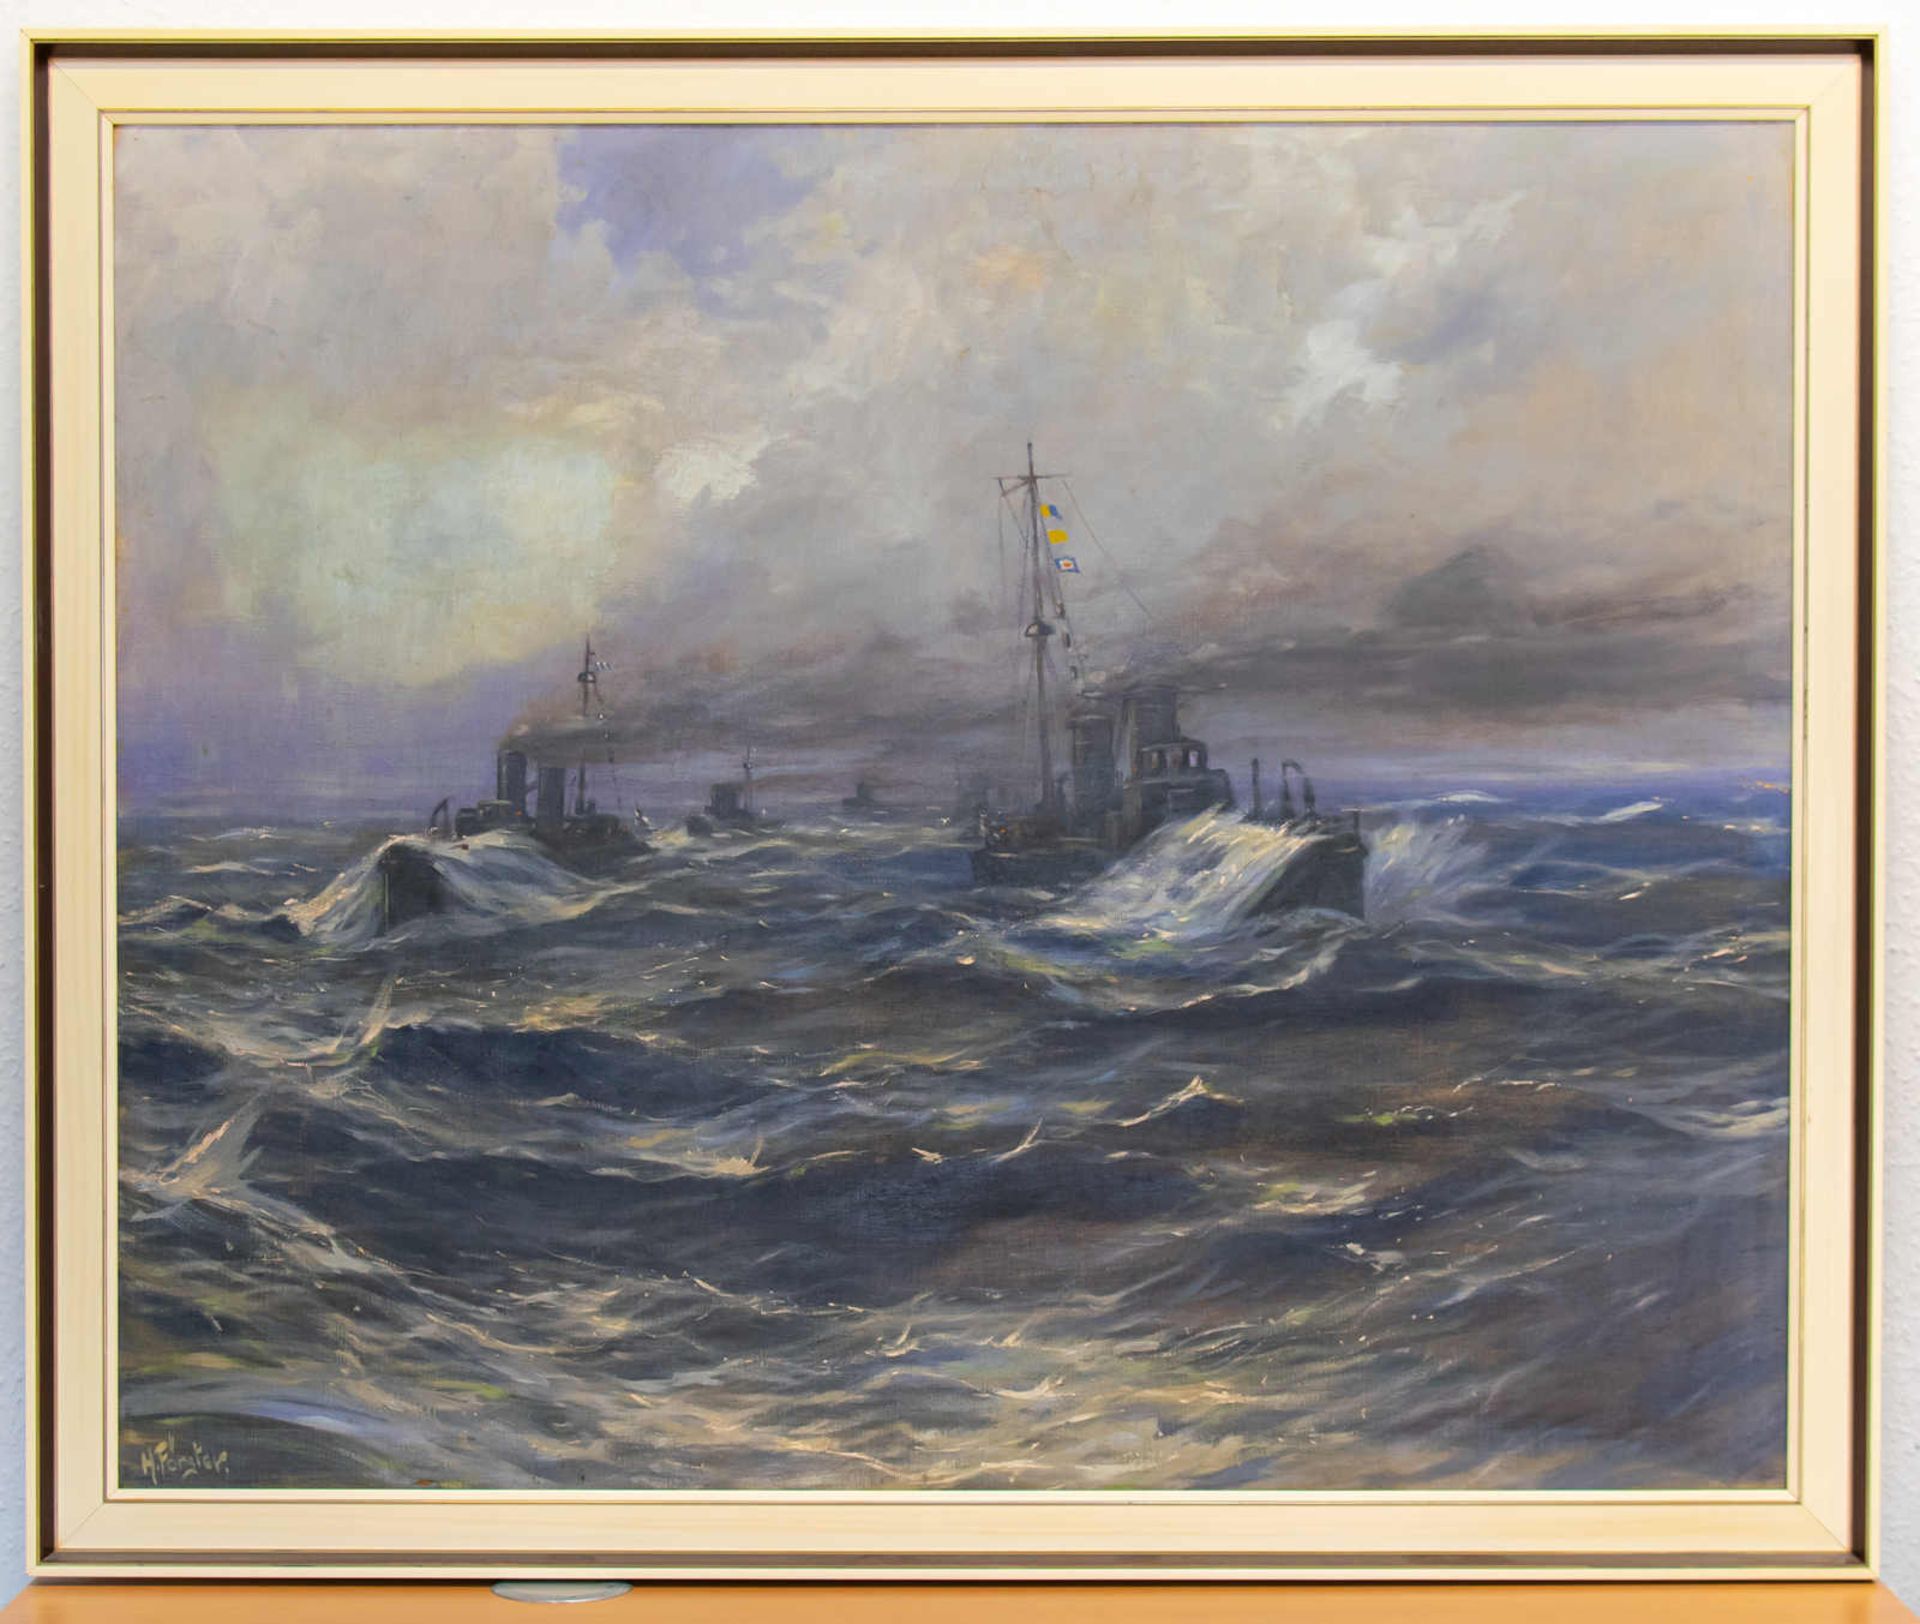 Gemälde "Minenboote - Verband auf See" (H. Förster)